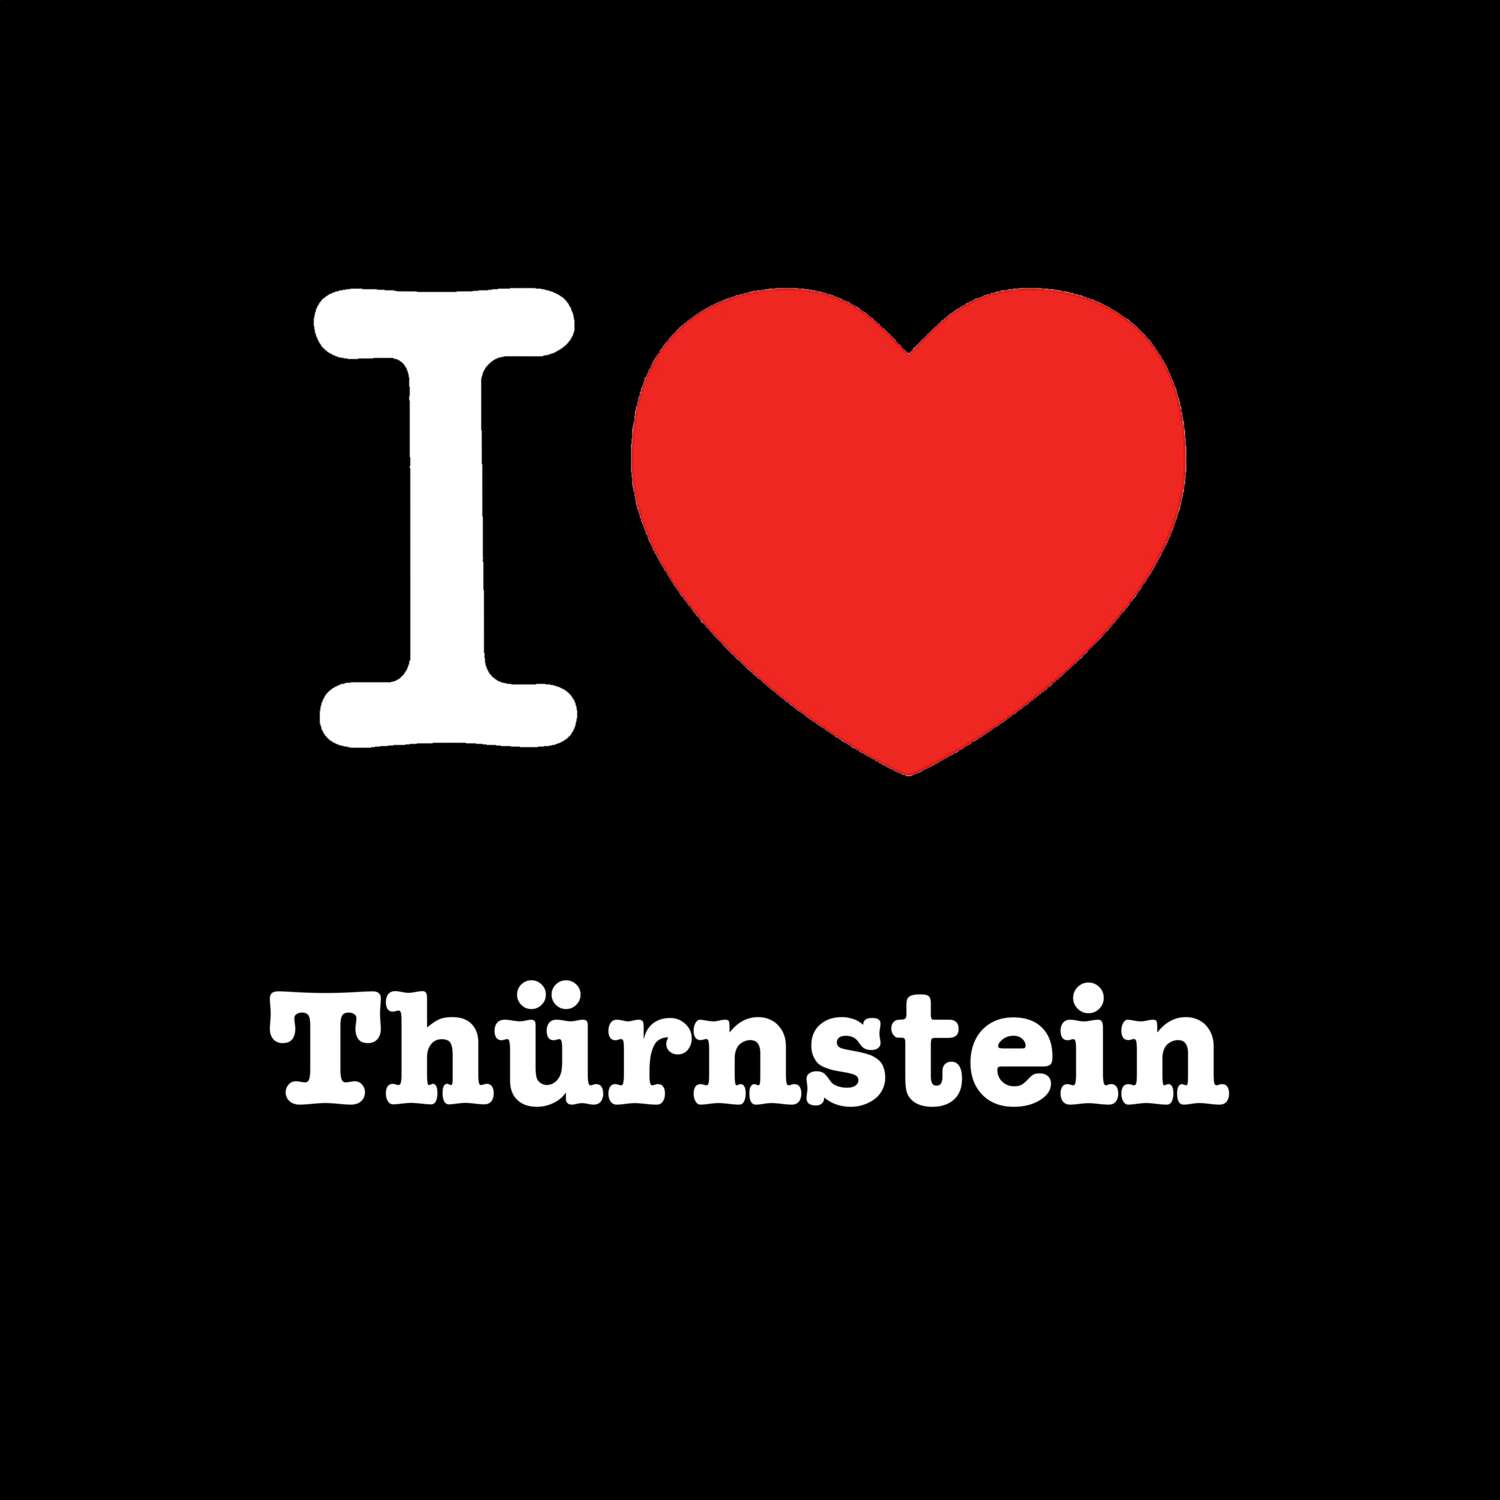 Thürnstein T-Shirt »I love«